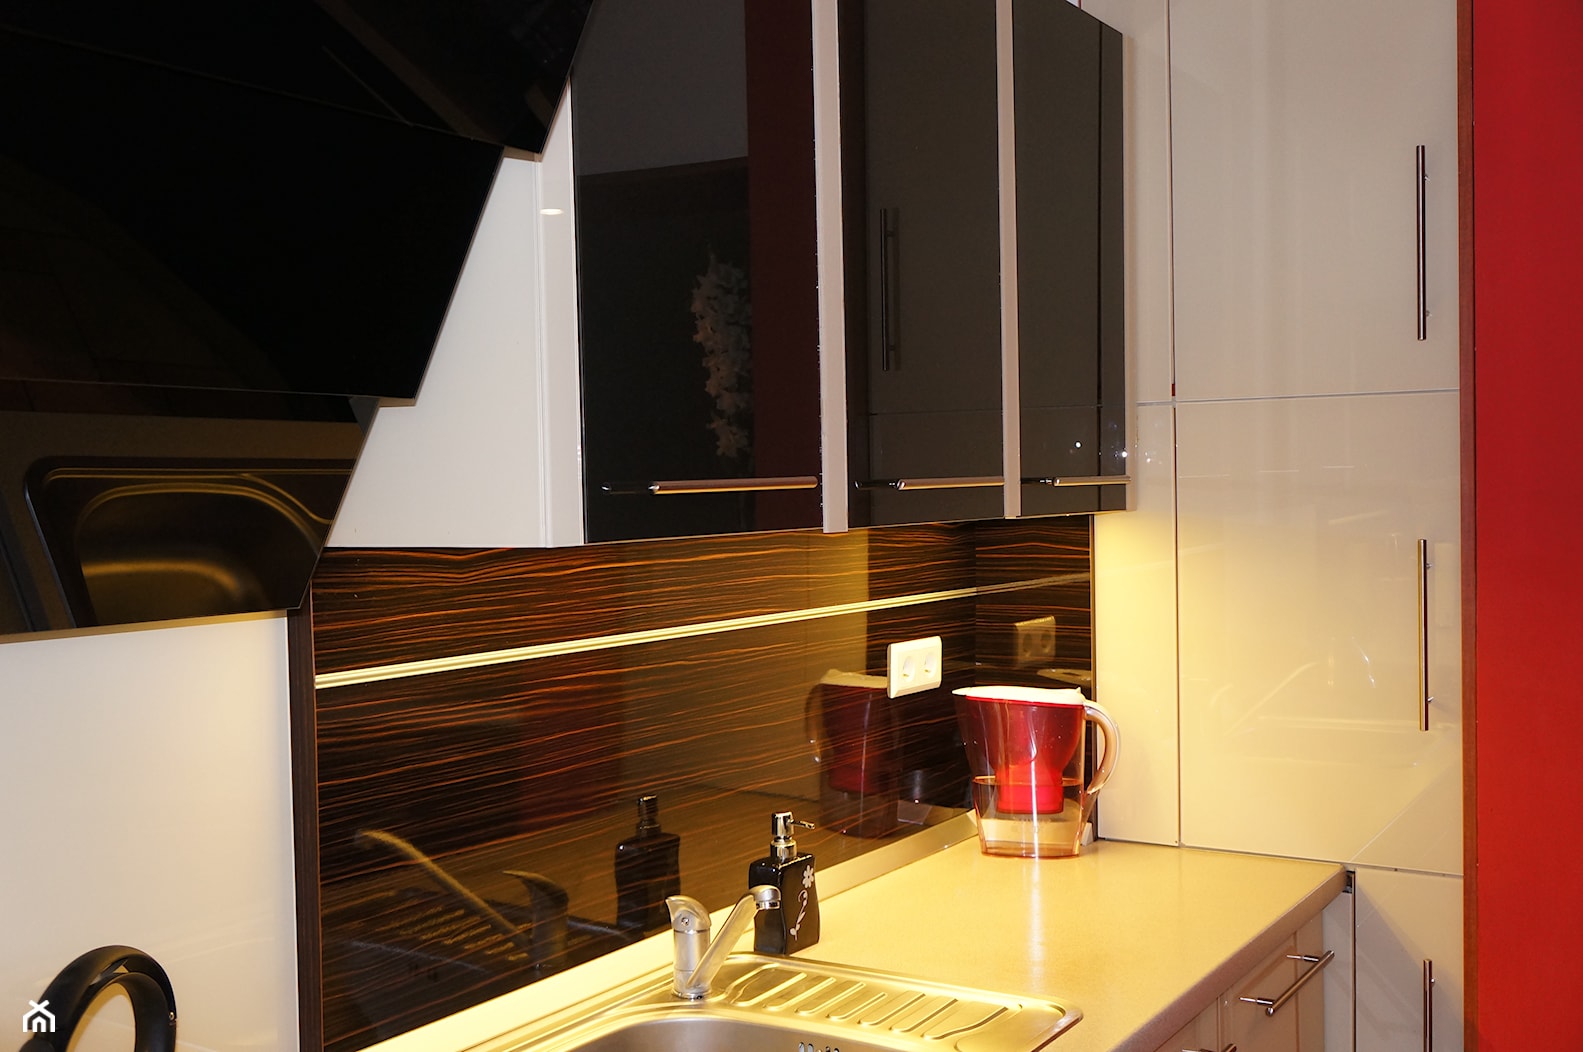 Kuchnia - szklane fronty - Kuchnia, styl minimalistyczny - zdjęcie od Robert Łatka - projektowanie mebli kuchennych - Homebook